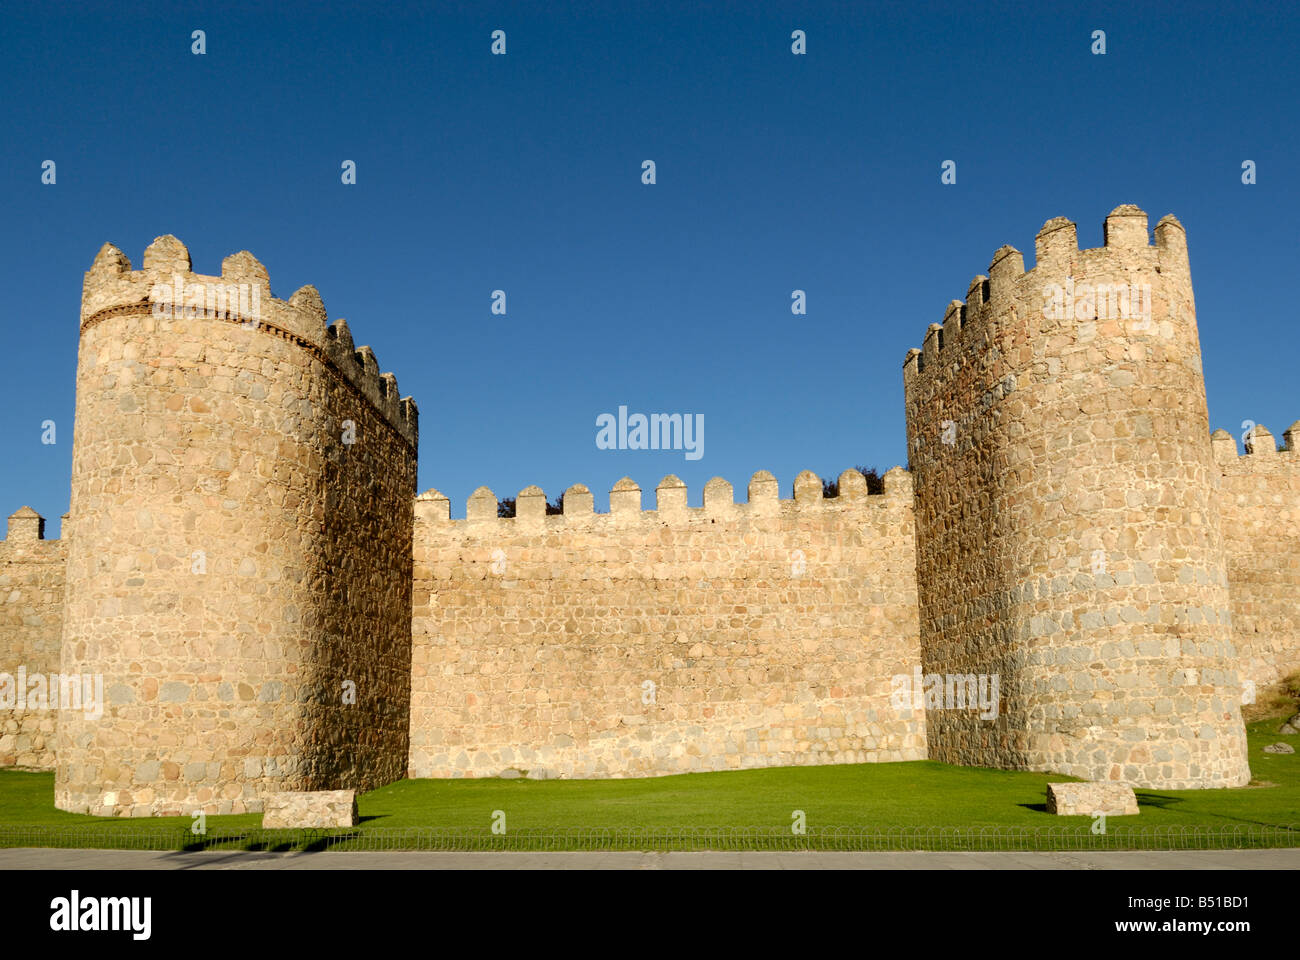 Les murs fortifiés de la ville médiévale d'Avila, Espagne Banque D'Images